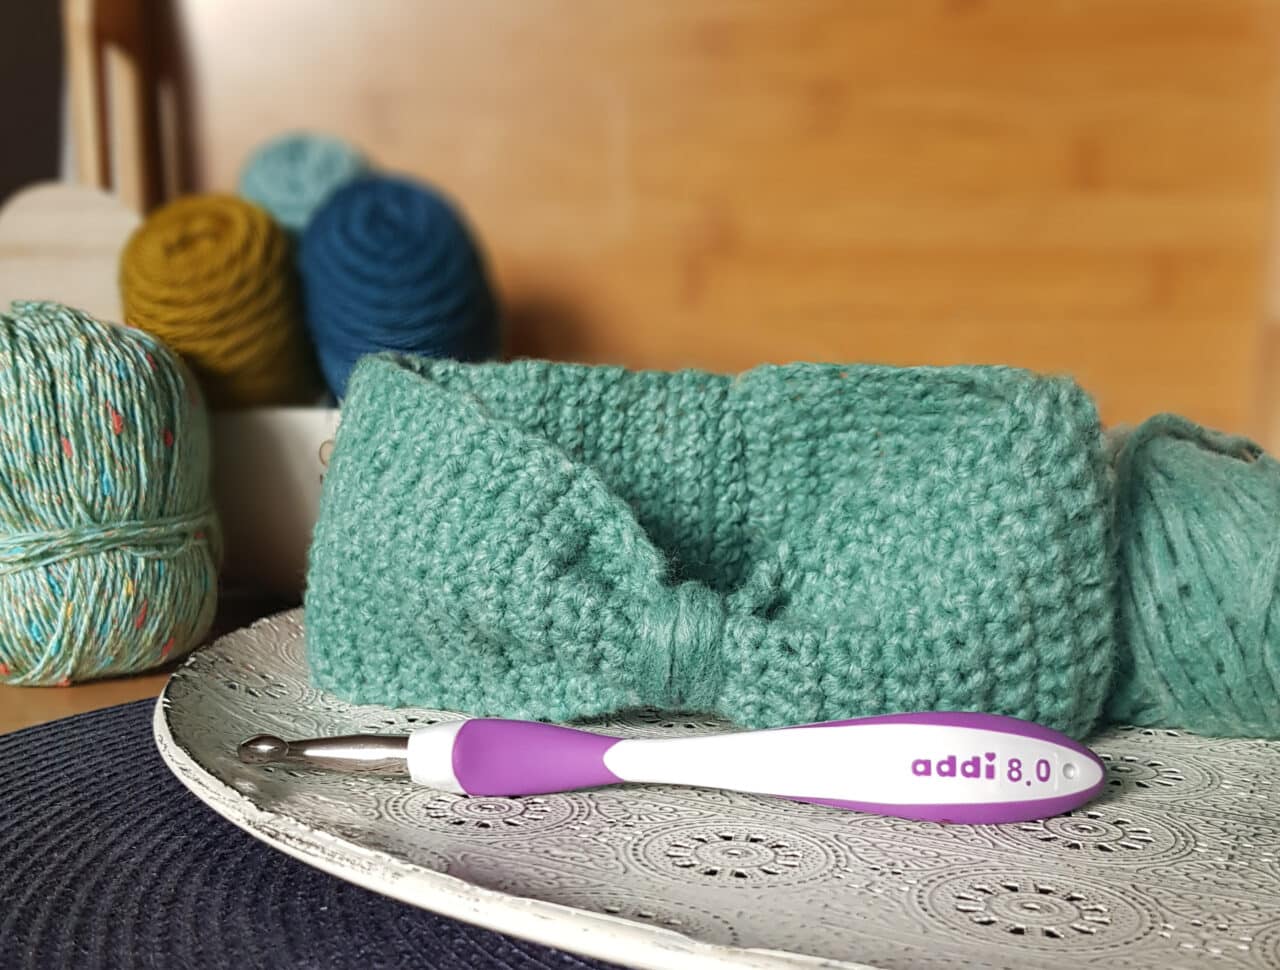 Crochet Headband addiSwing Learn to Crochet,Crochet Headband for Beginners